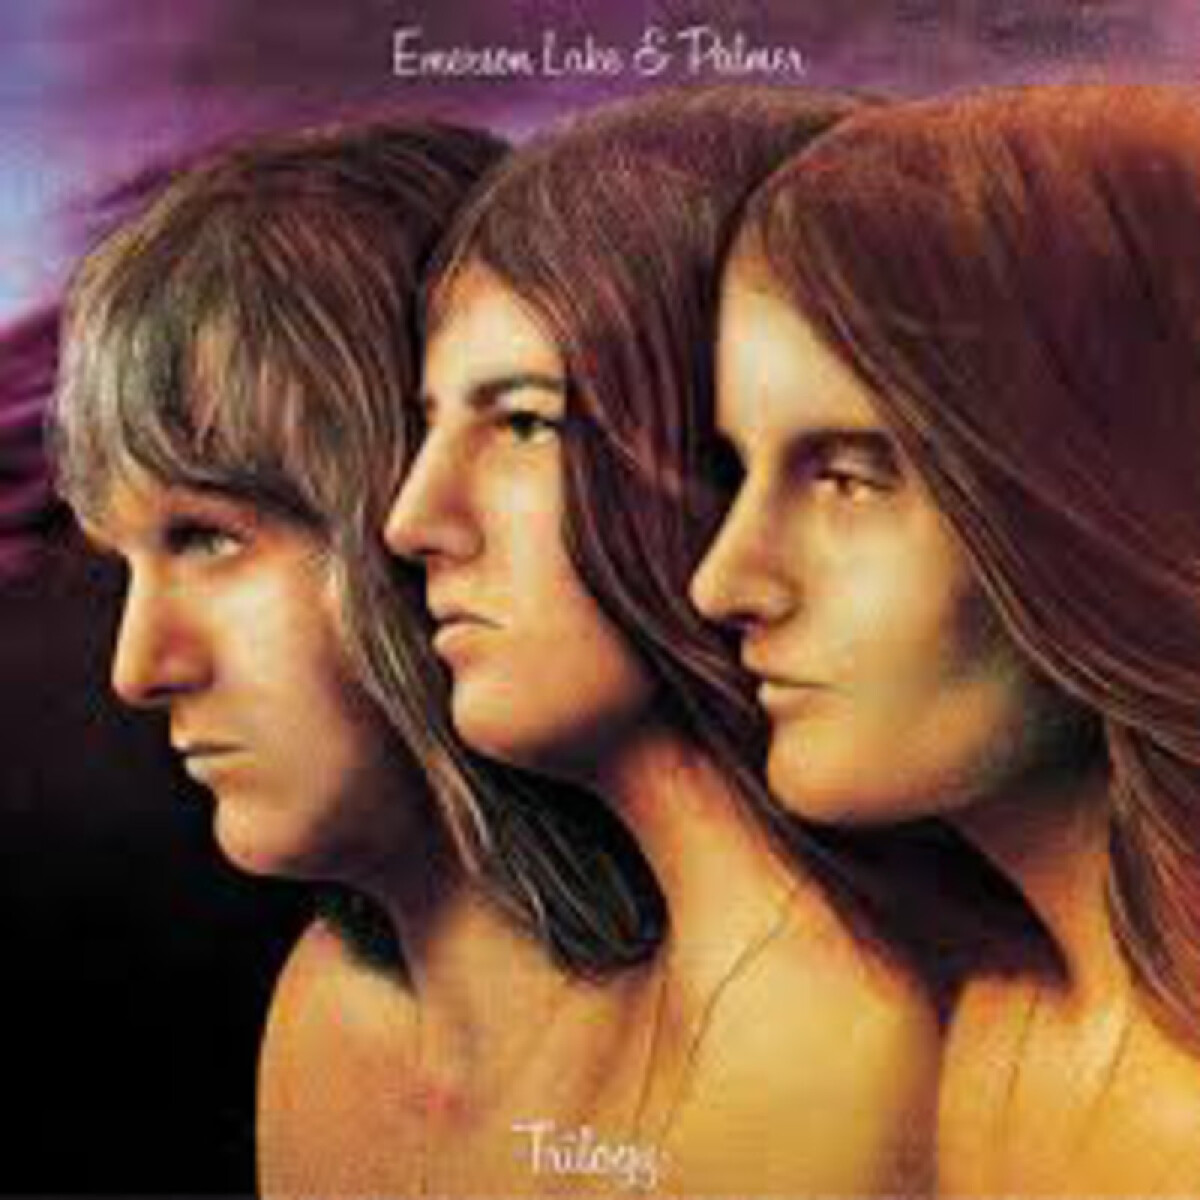 Emerson Lake & Palmer-trilogy 